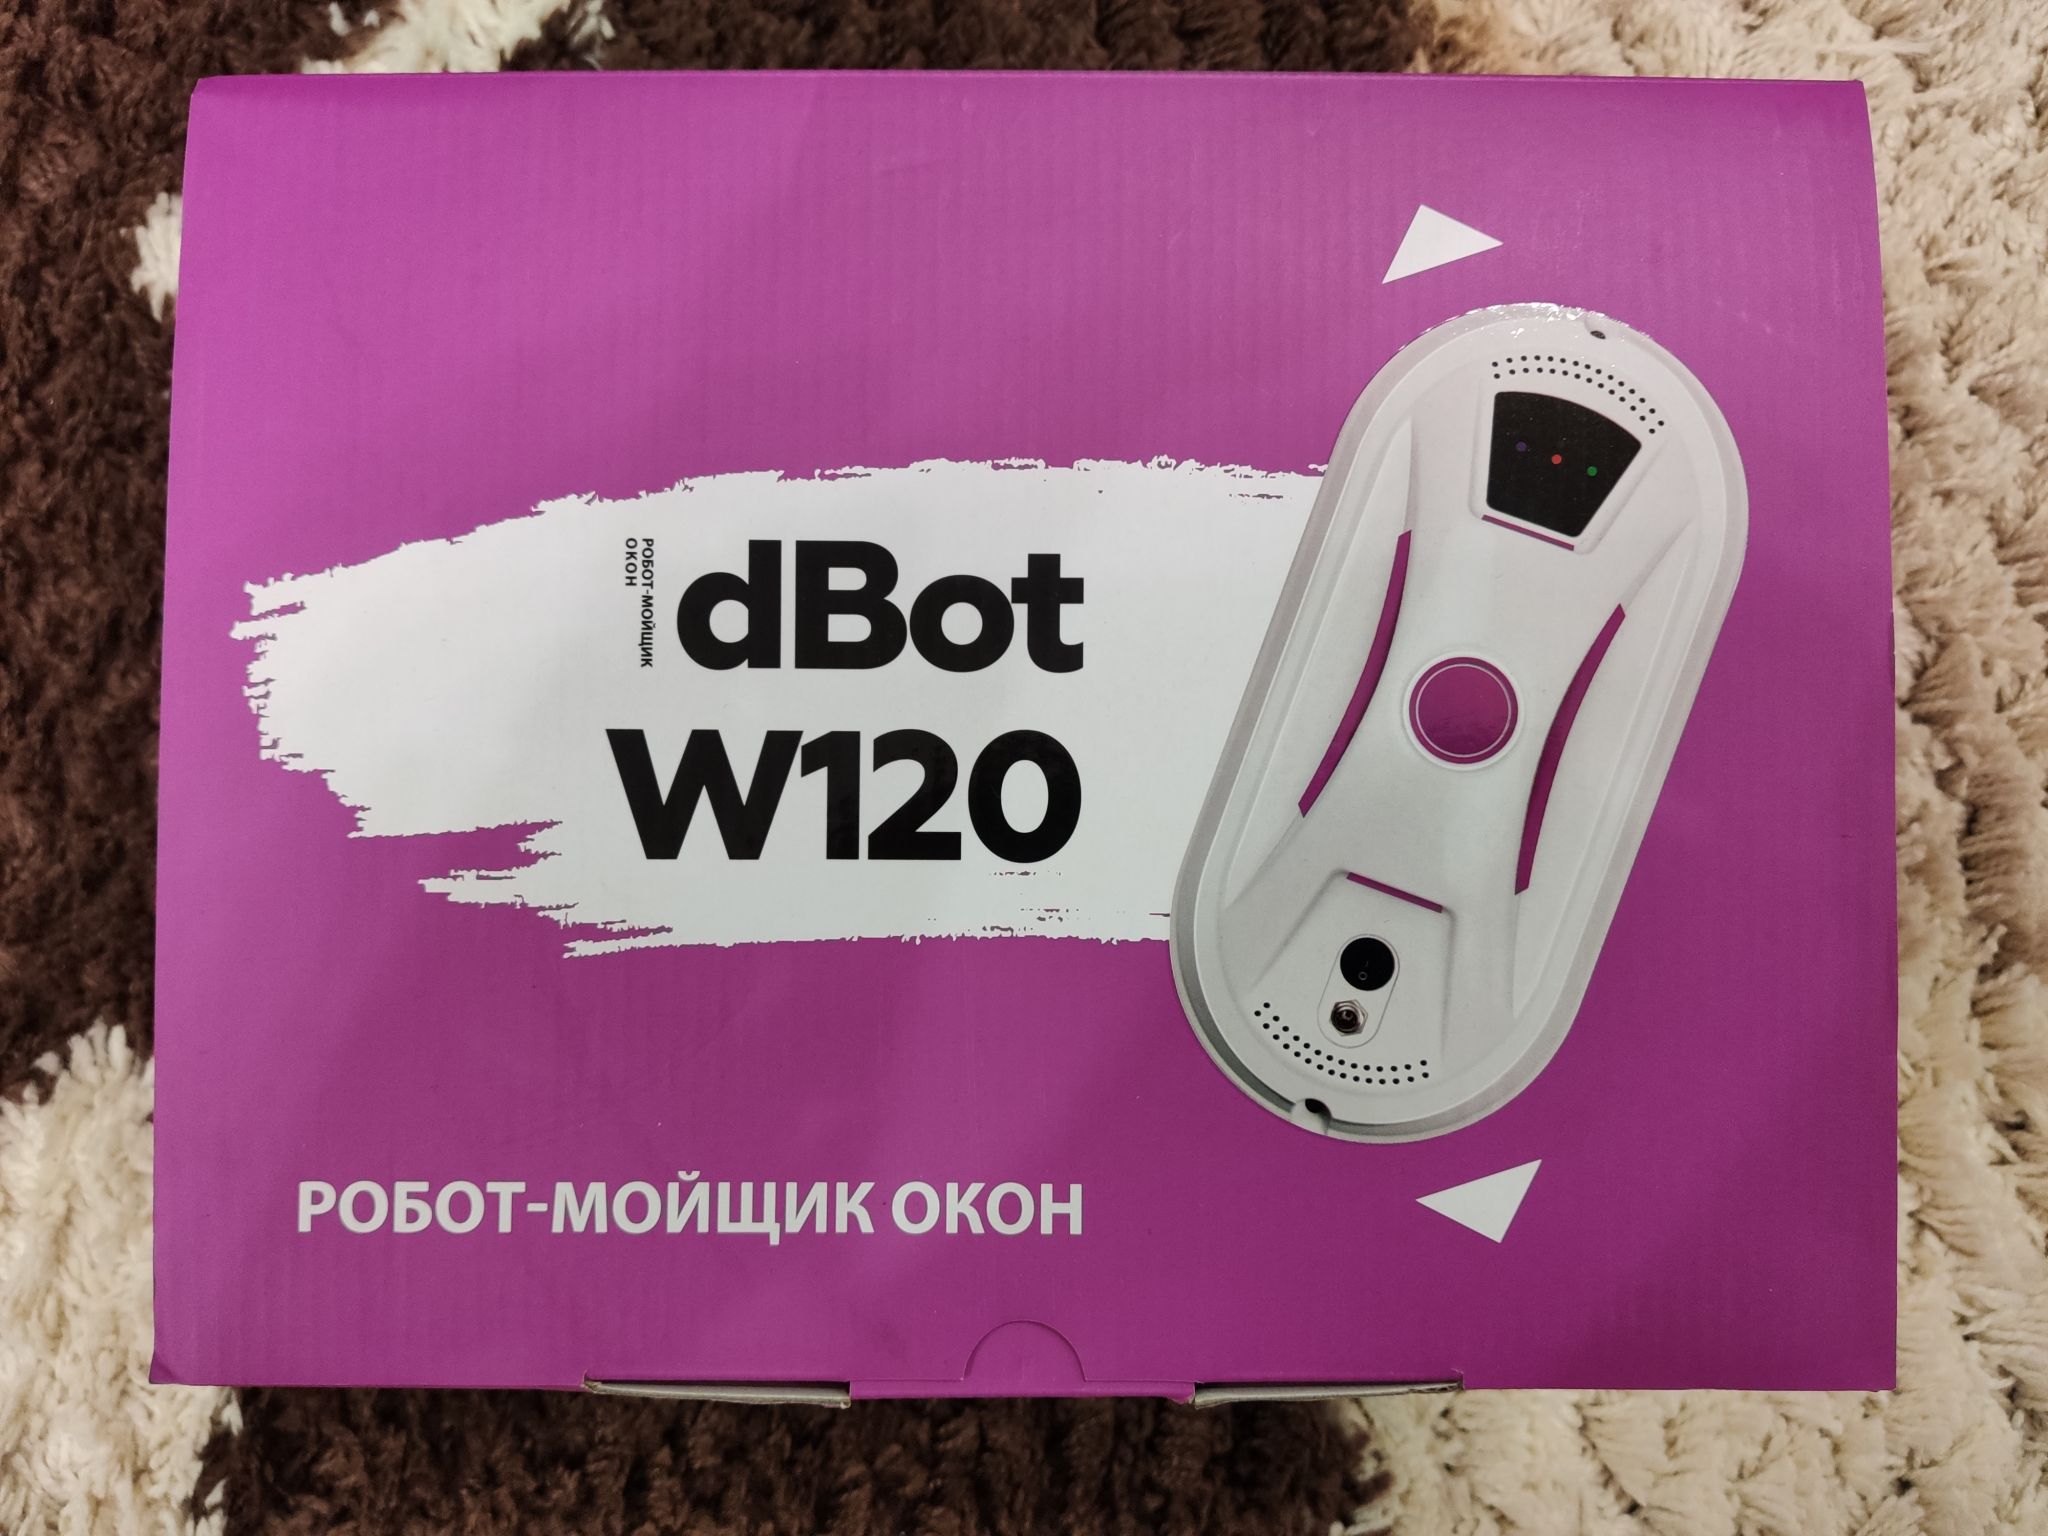 Робот мойщик окон dbot w120